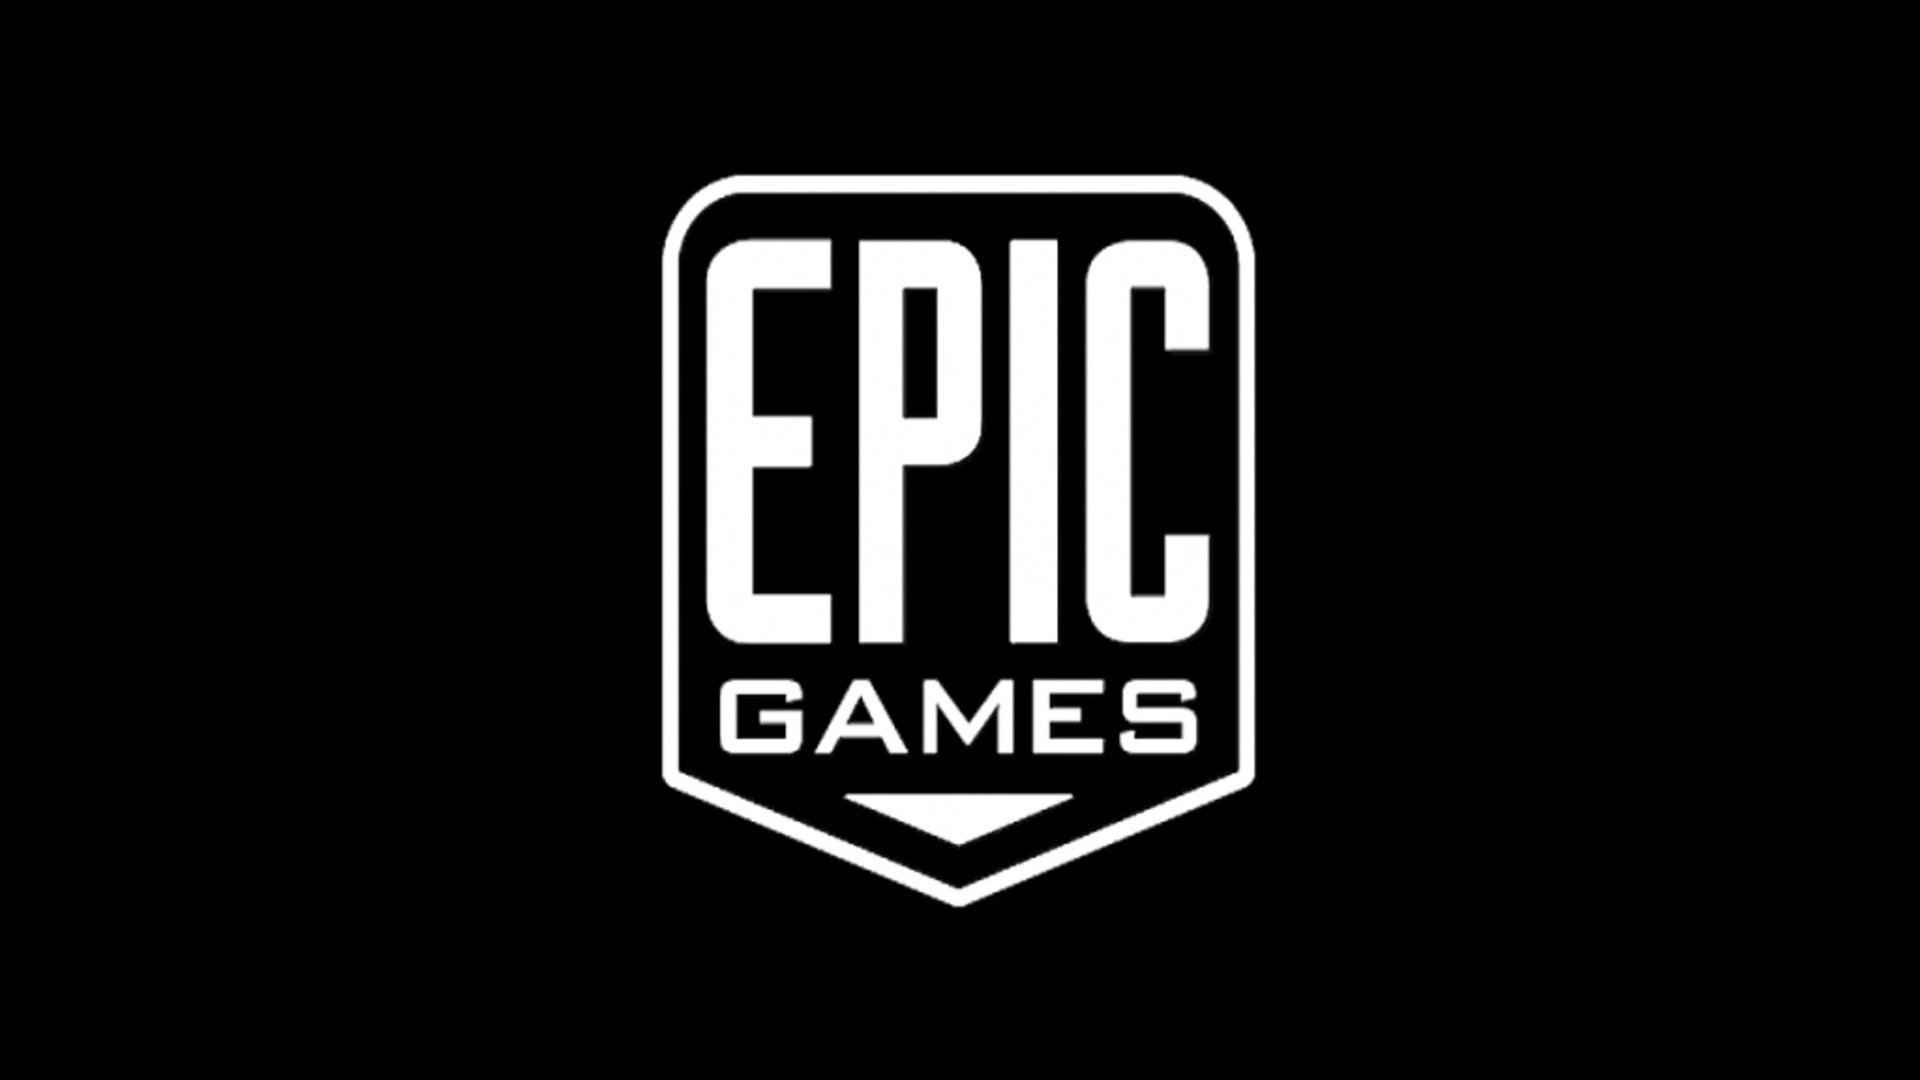 

Epic games Klingeltöne für Handys

